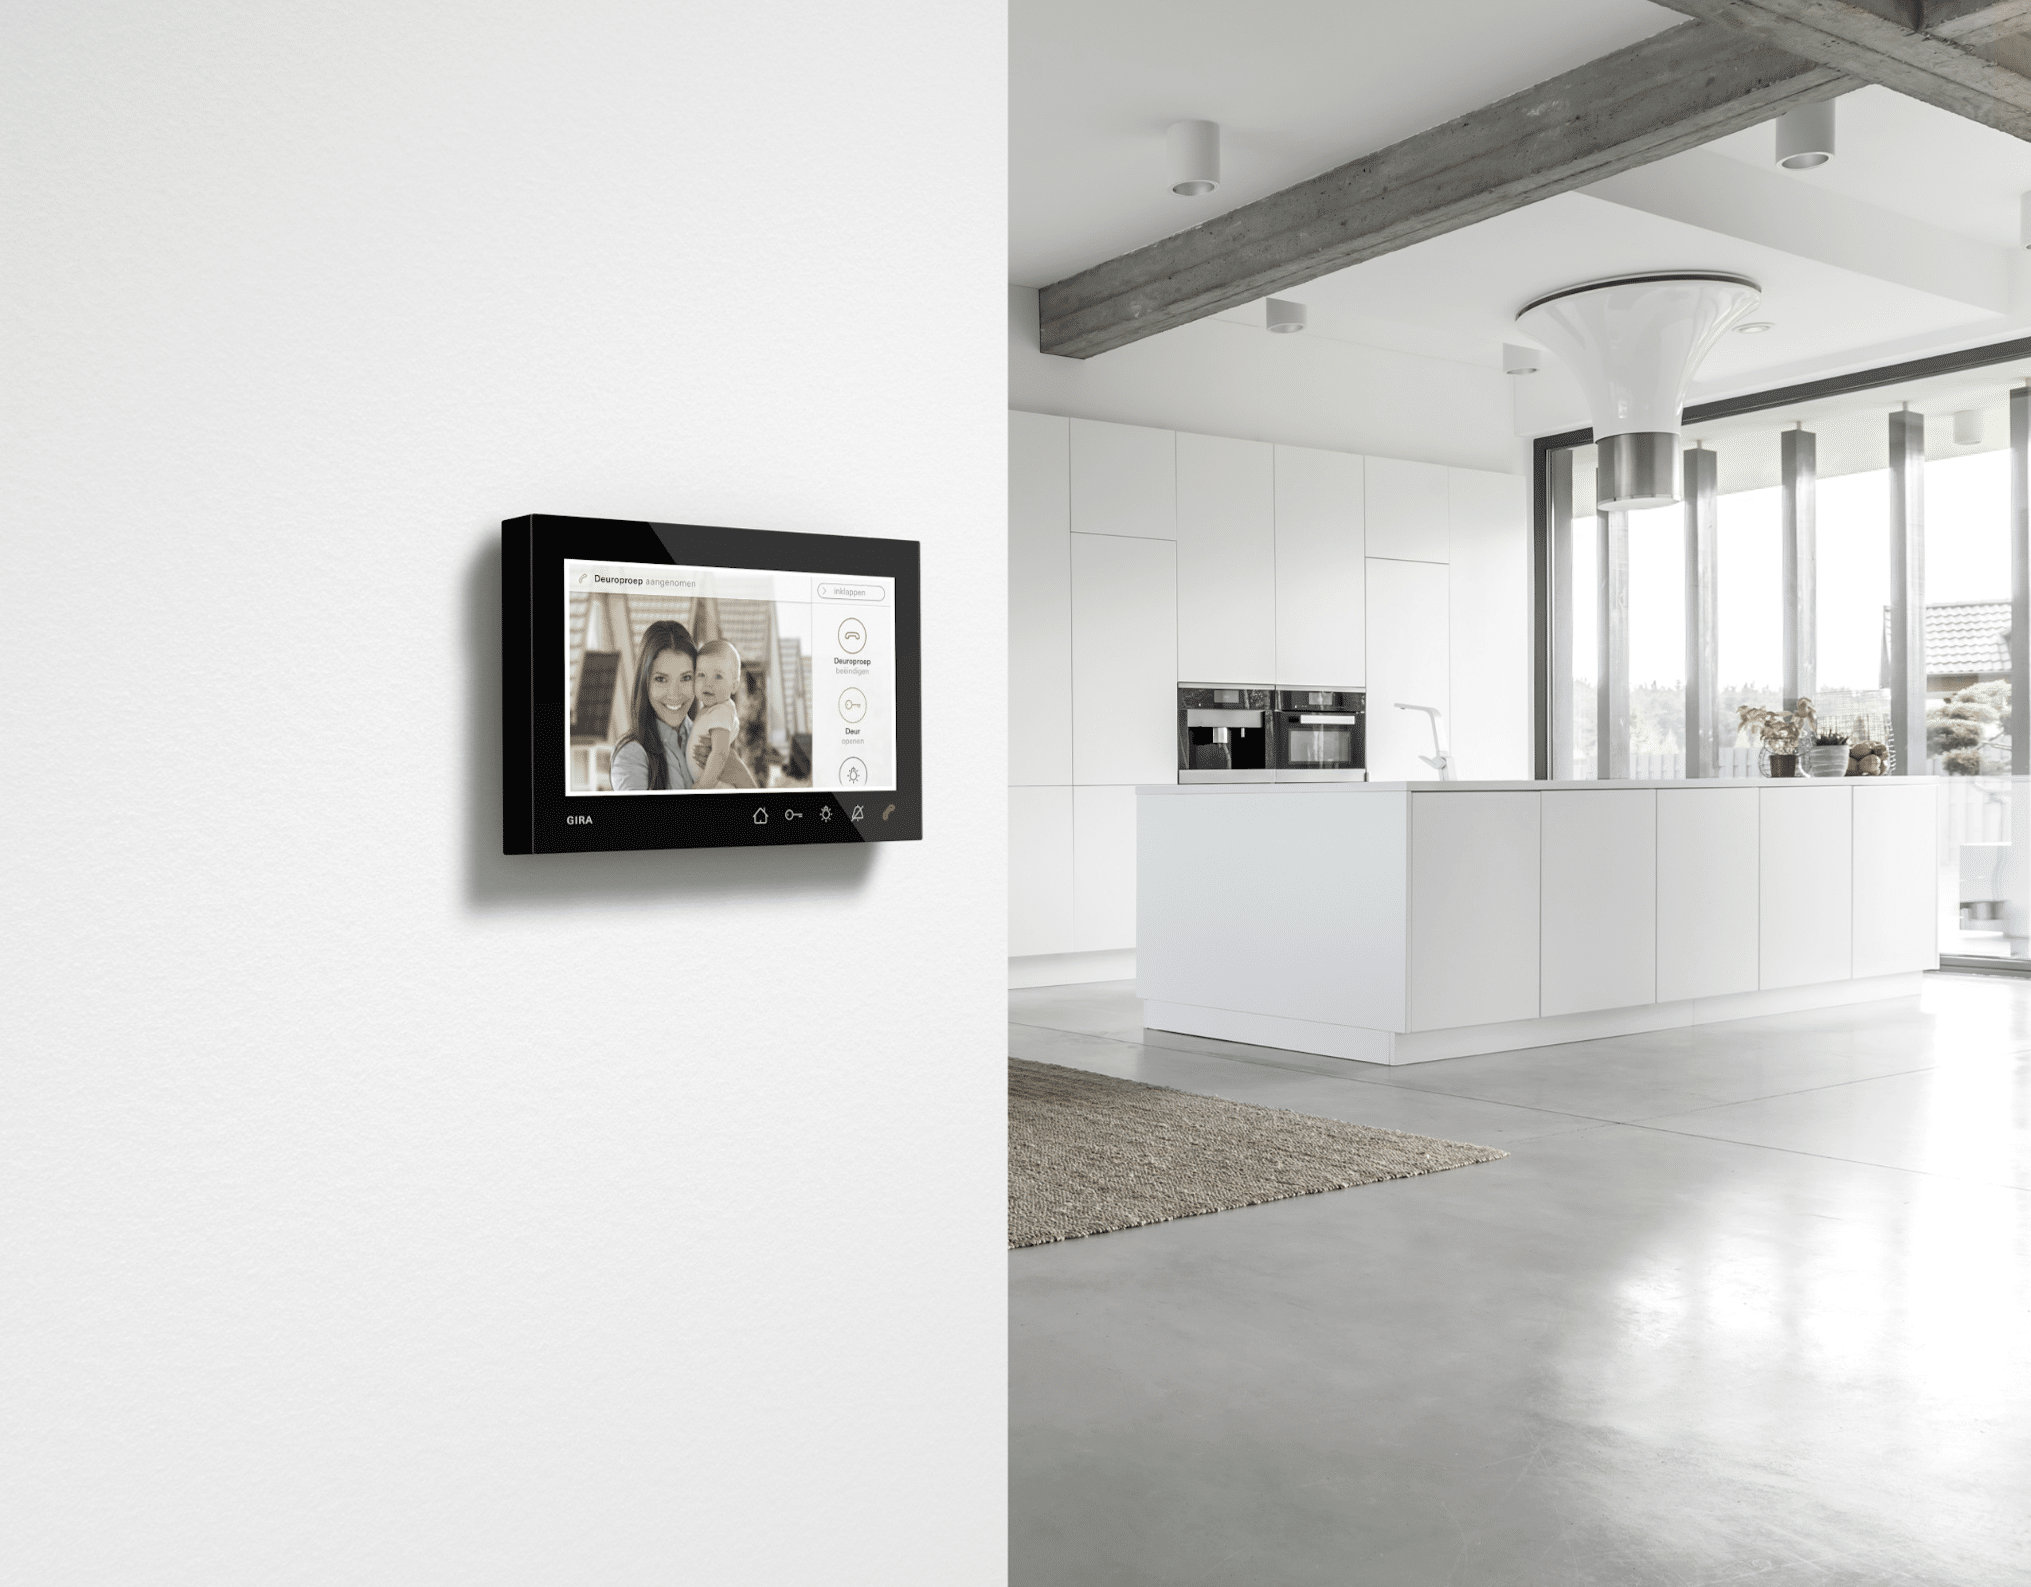 Gira präsentiert eine Smart-Home Gegensprechanlage mit Videofunktion zur idealen Türkommunikation.